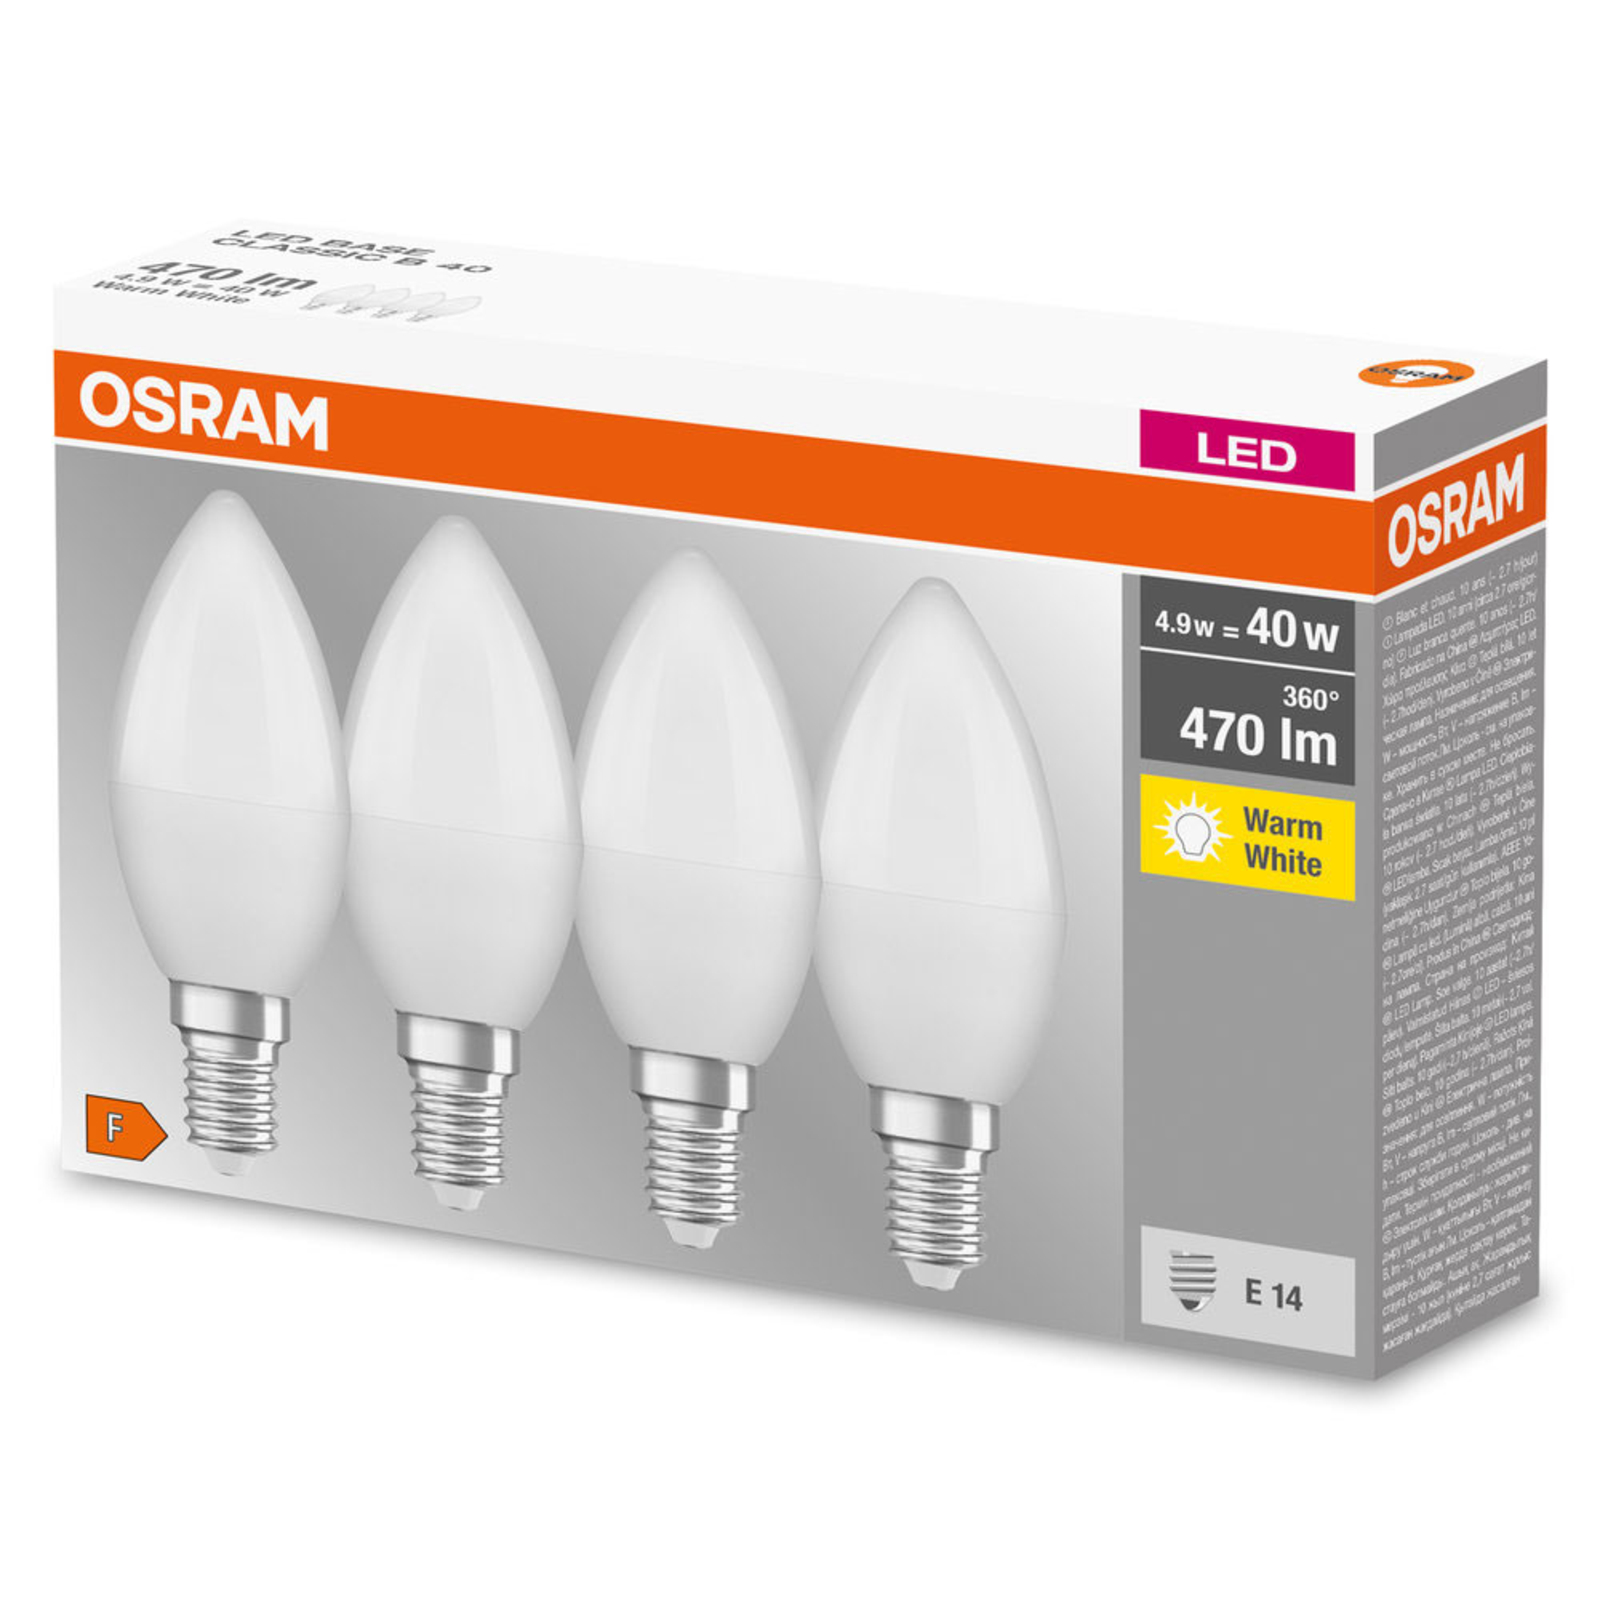 OSRAM LED candle E14 base retro 4.9W 4-pack 2700K